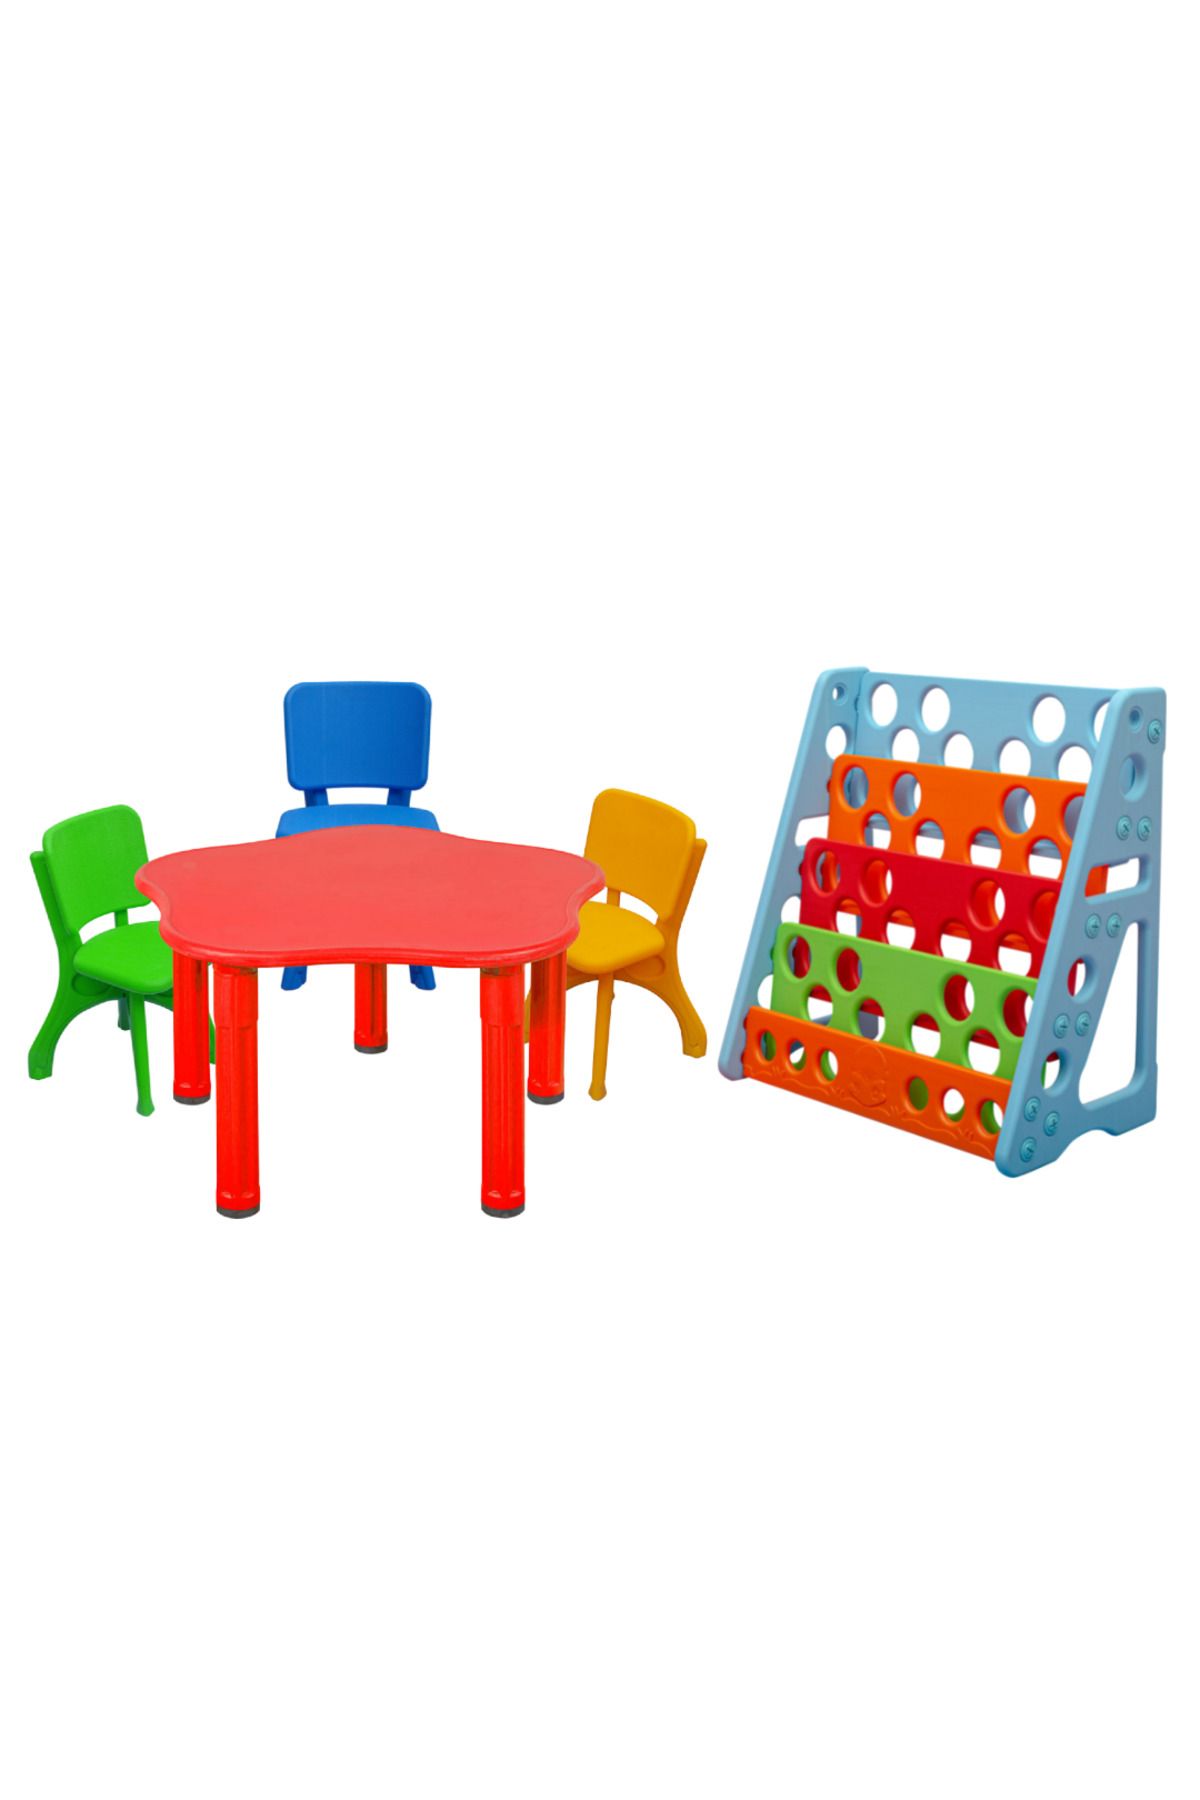 ÇIRAK Çocuk Aktivite Masası - Renkli Sandalyeler ve Renkli Kitaplık - Büyük Masa Set - Anaokulu - Kreş M2